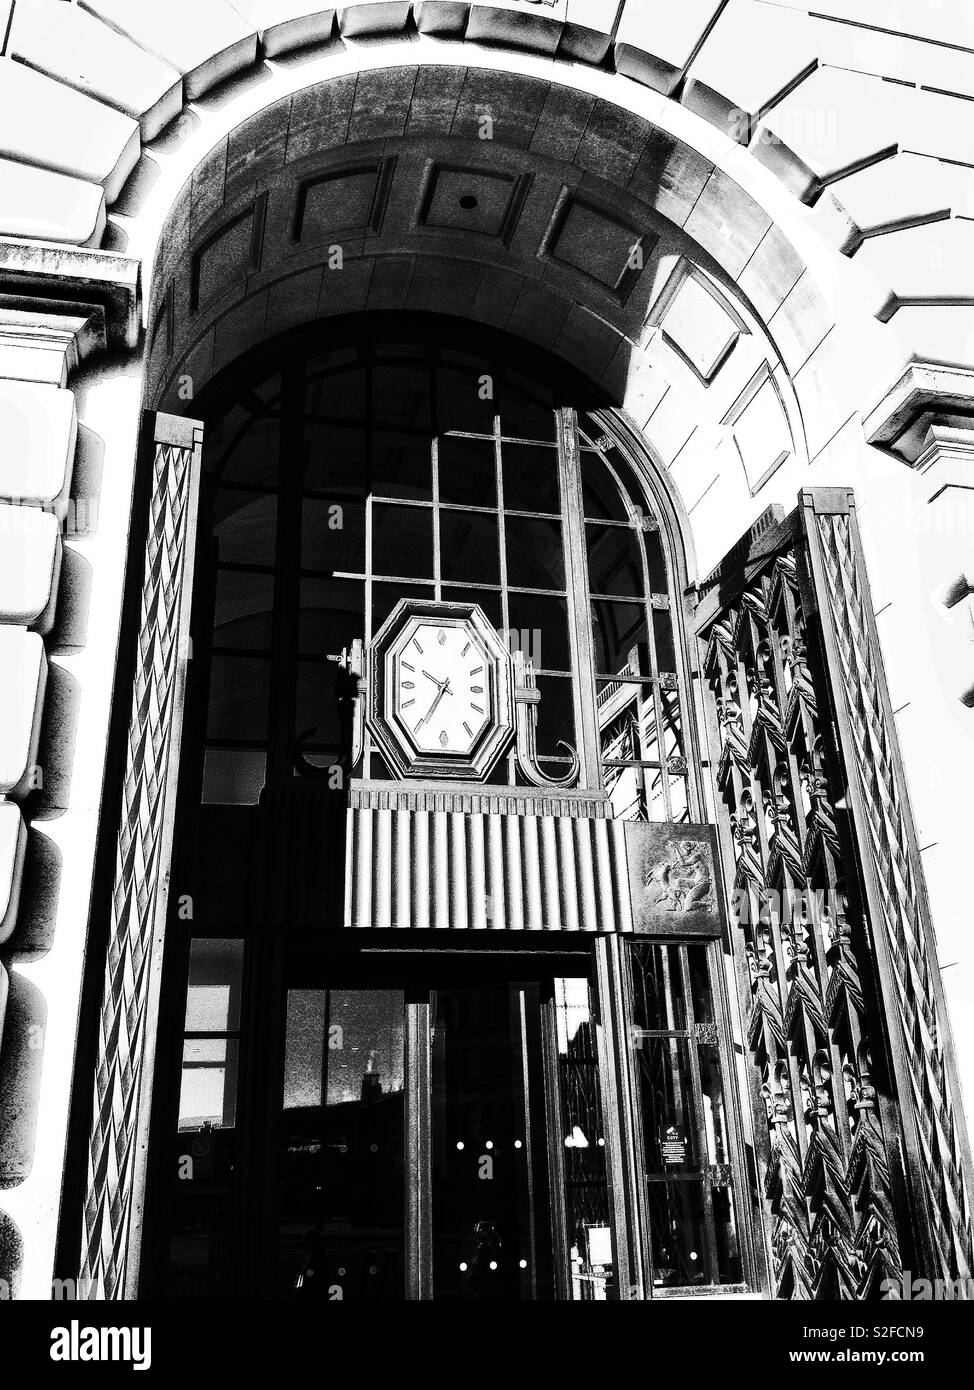 Horloge octogonale Banque d'images noir et blanc - Alamy